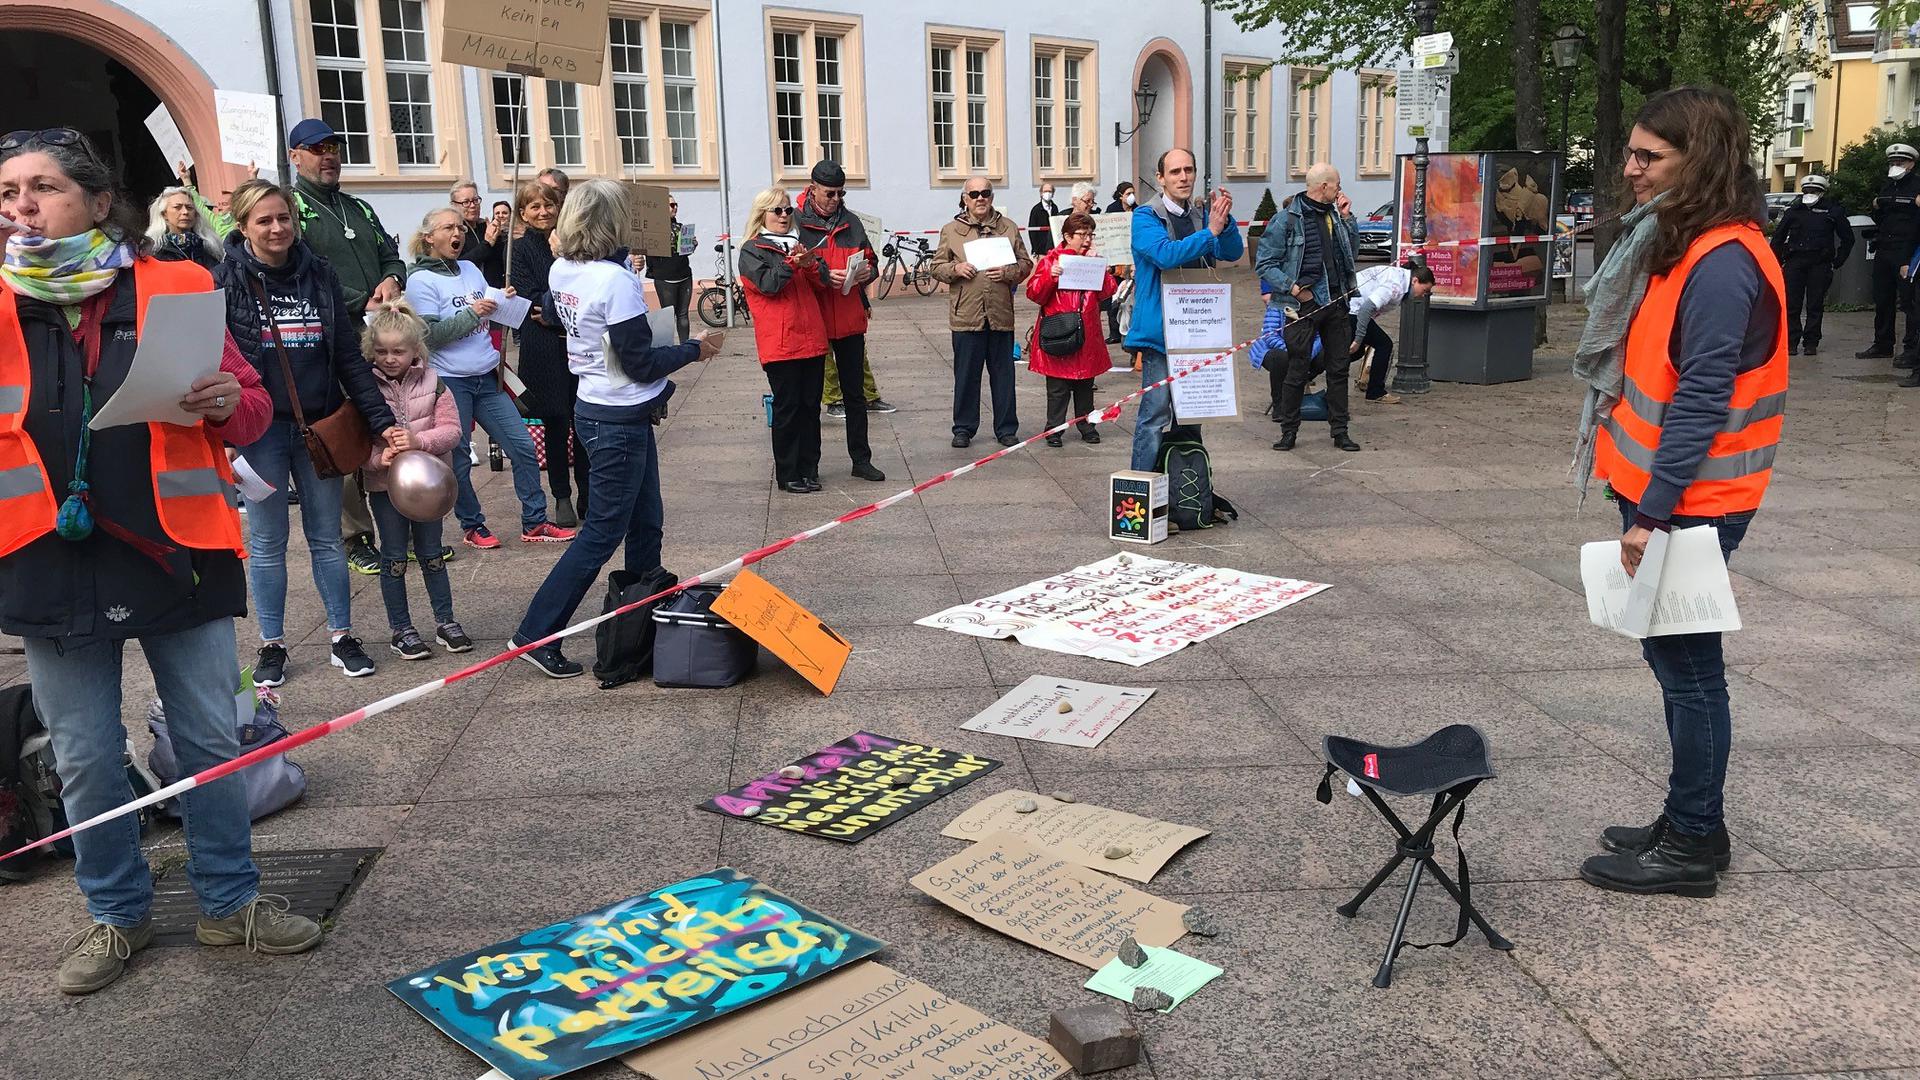 Demonstrierende vor dem Schloss Ettlingen sehen ihre Freiheit und ihre Grundrecht massiv eingeschränkt. Das kritisieren sie am Samstagvormittag erneut. Rund 100 Personen nahmen teil.